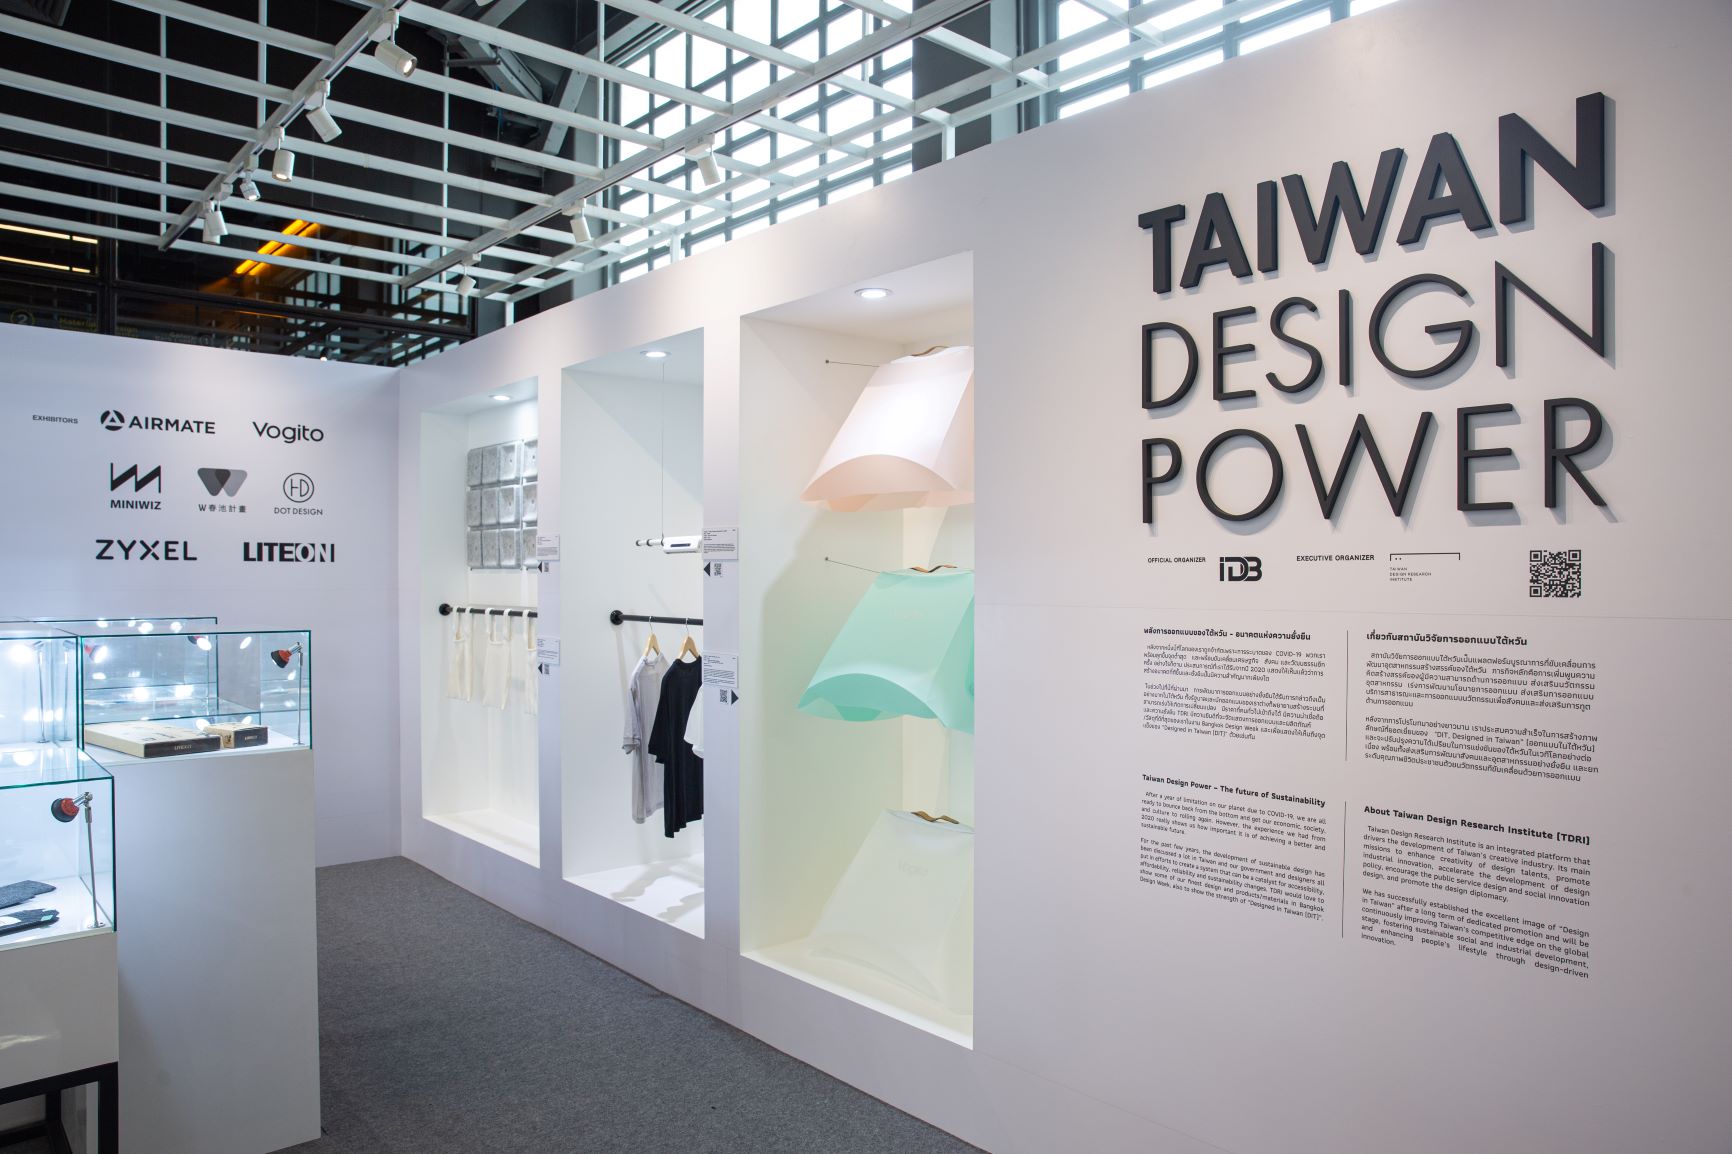 1. 曼谷設計周 Taiwan Design Power館.jpg